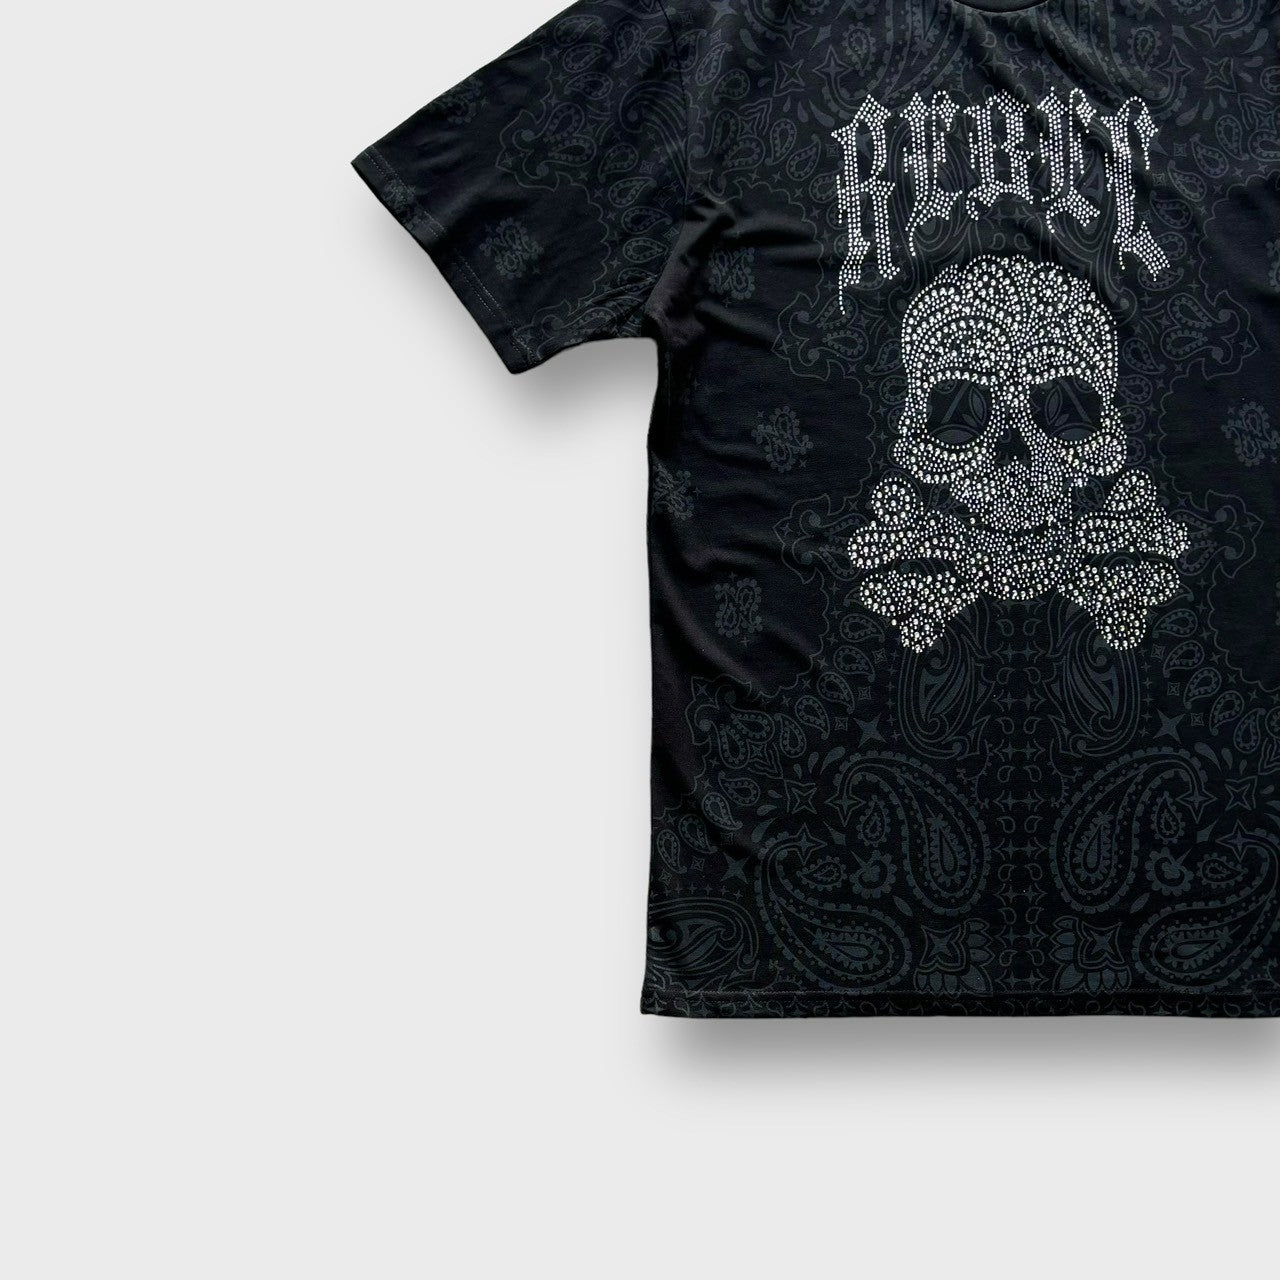 "vengeance" skull design t-shirt